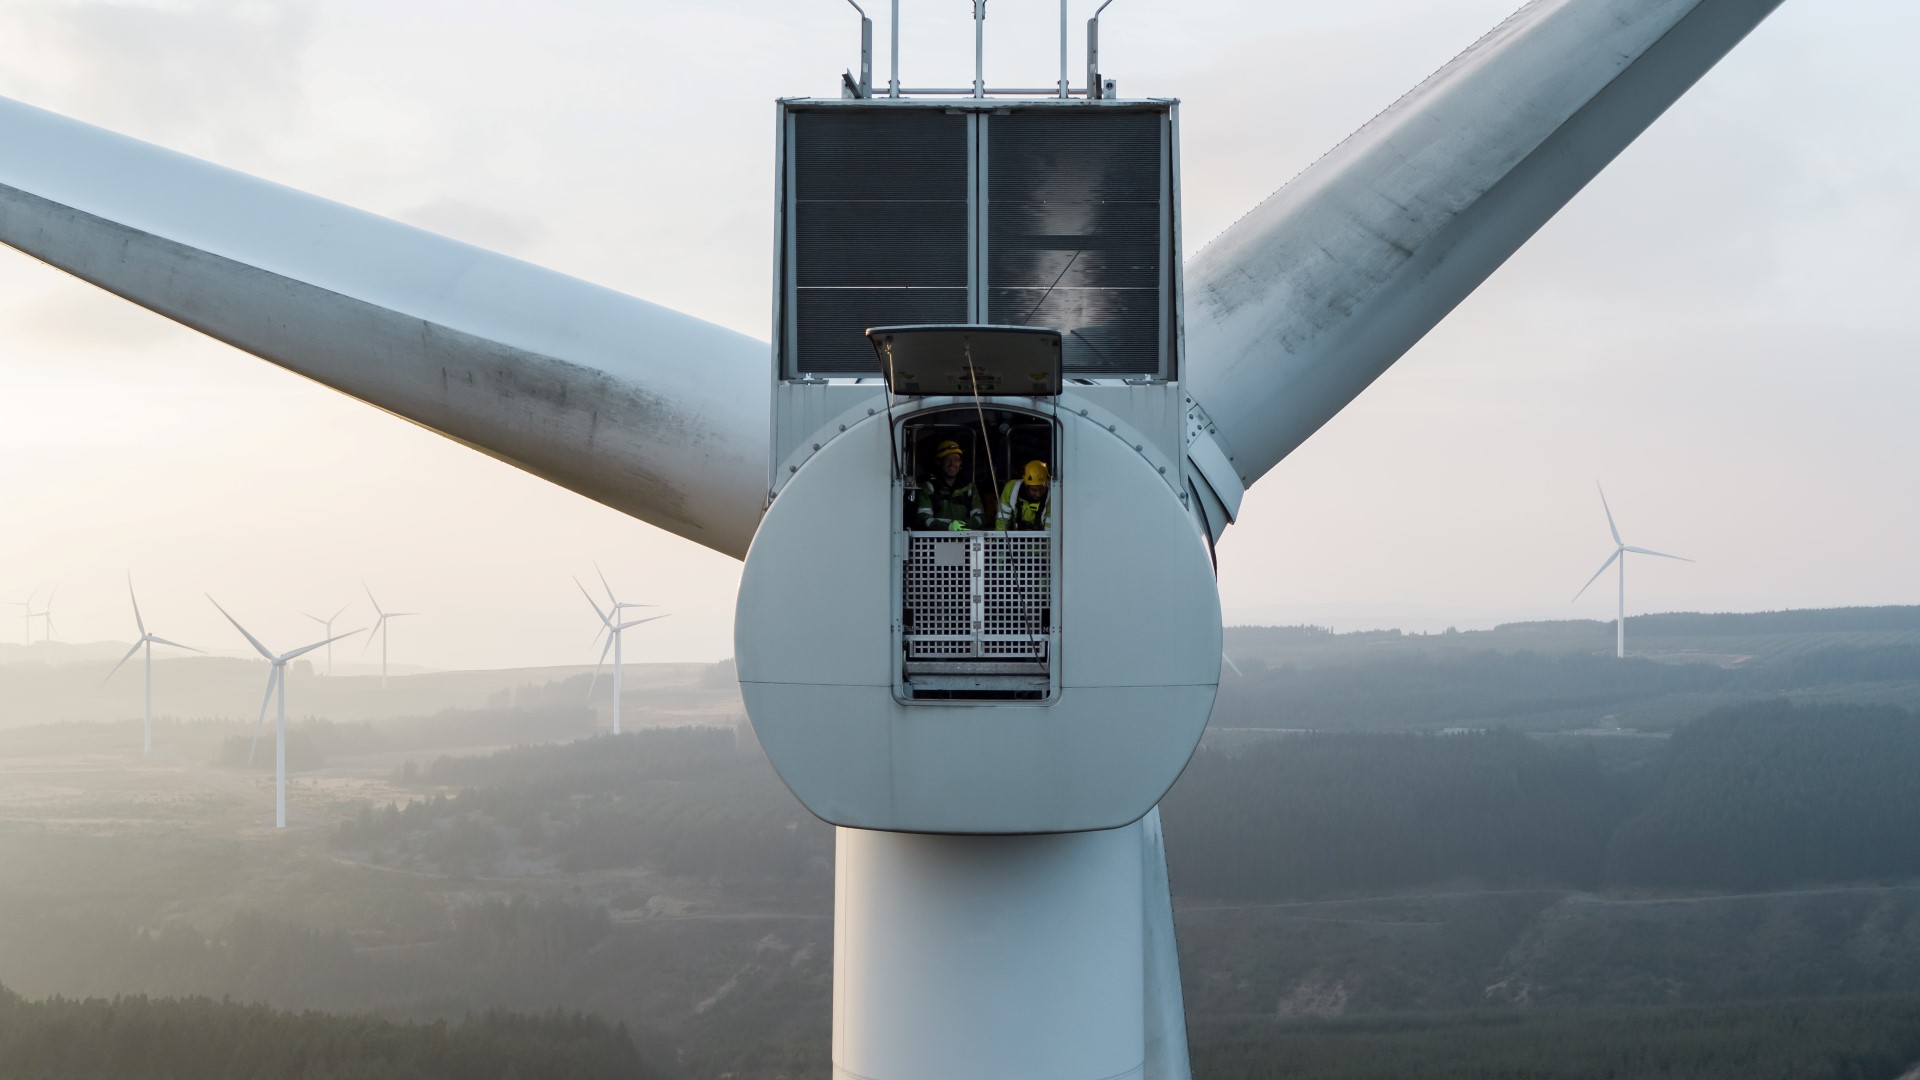 Technicians inside a wind turbine nacelle